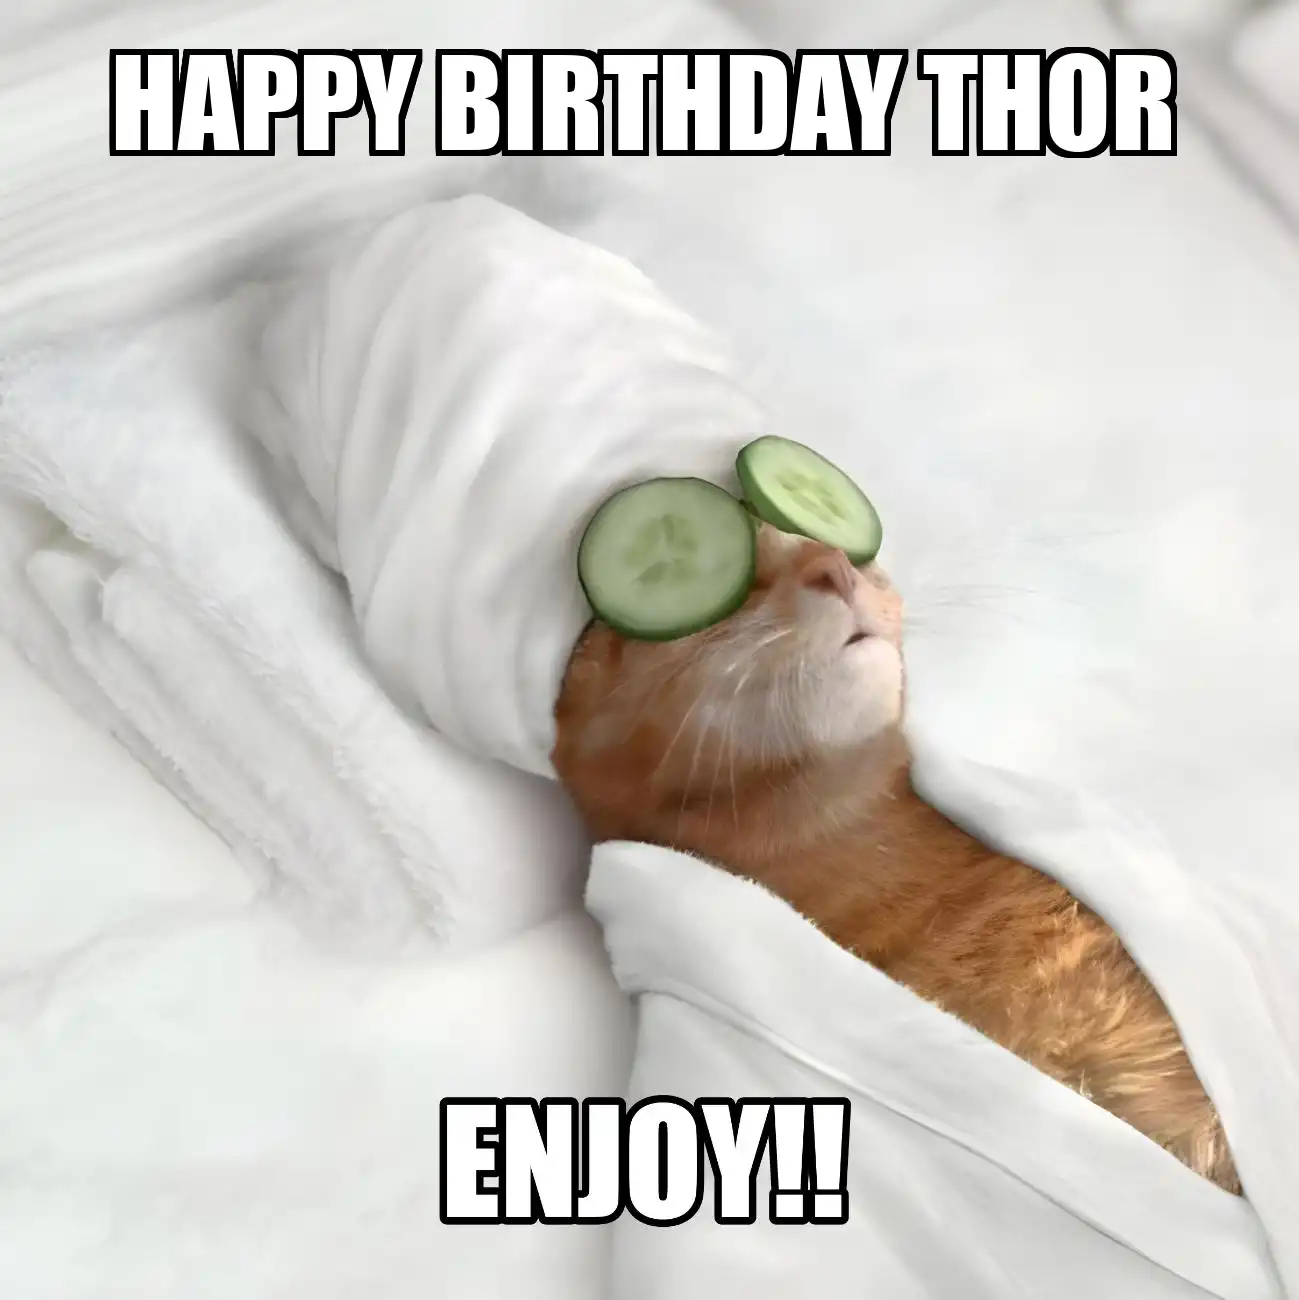 Happy Birthday Thor Enjoy Cat Meme